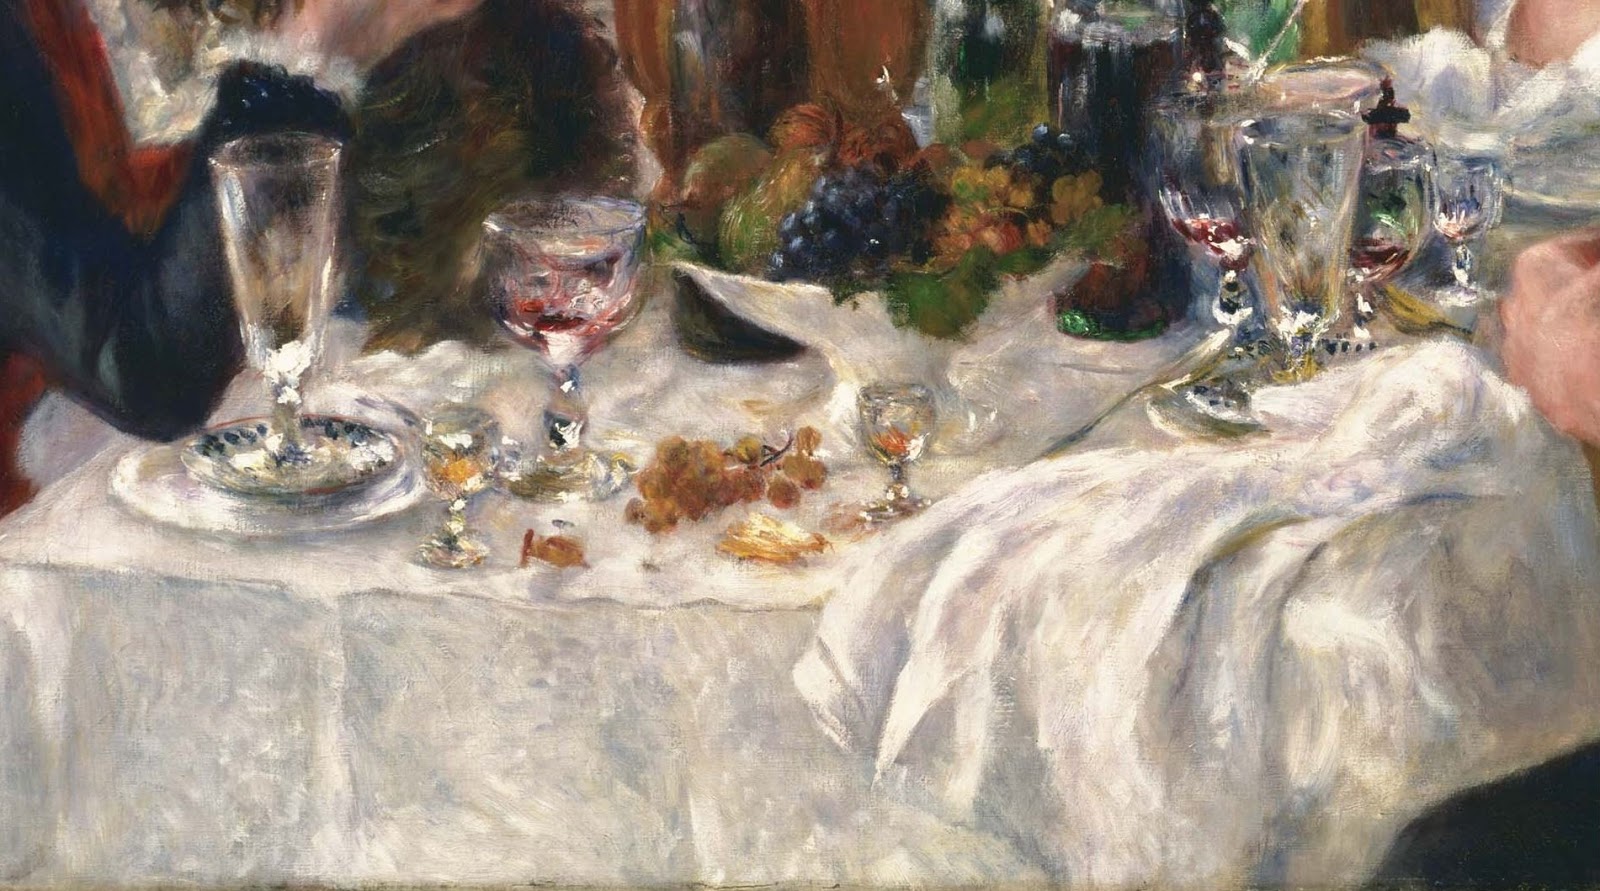 Pierre+Auguste+Renoir-1841-1-19 (565).JPG